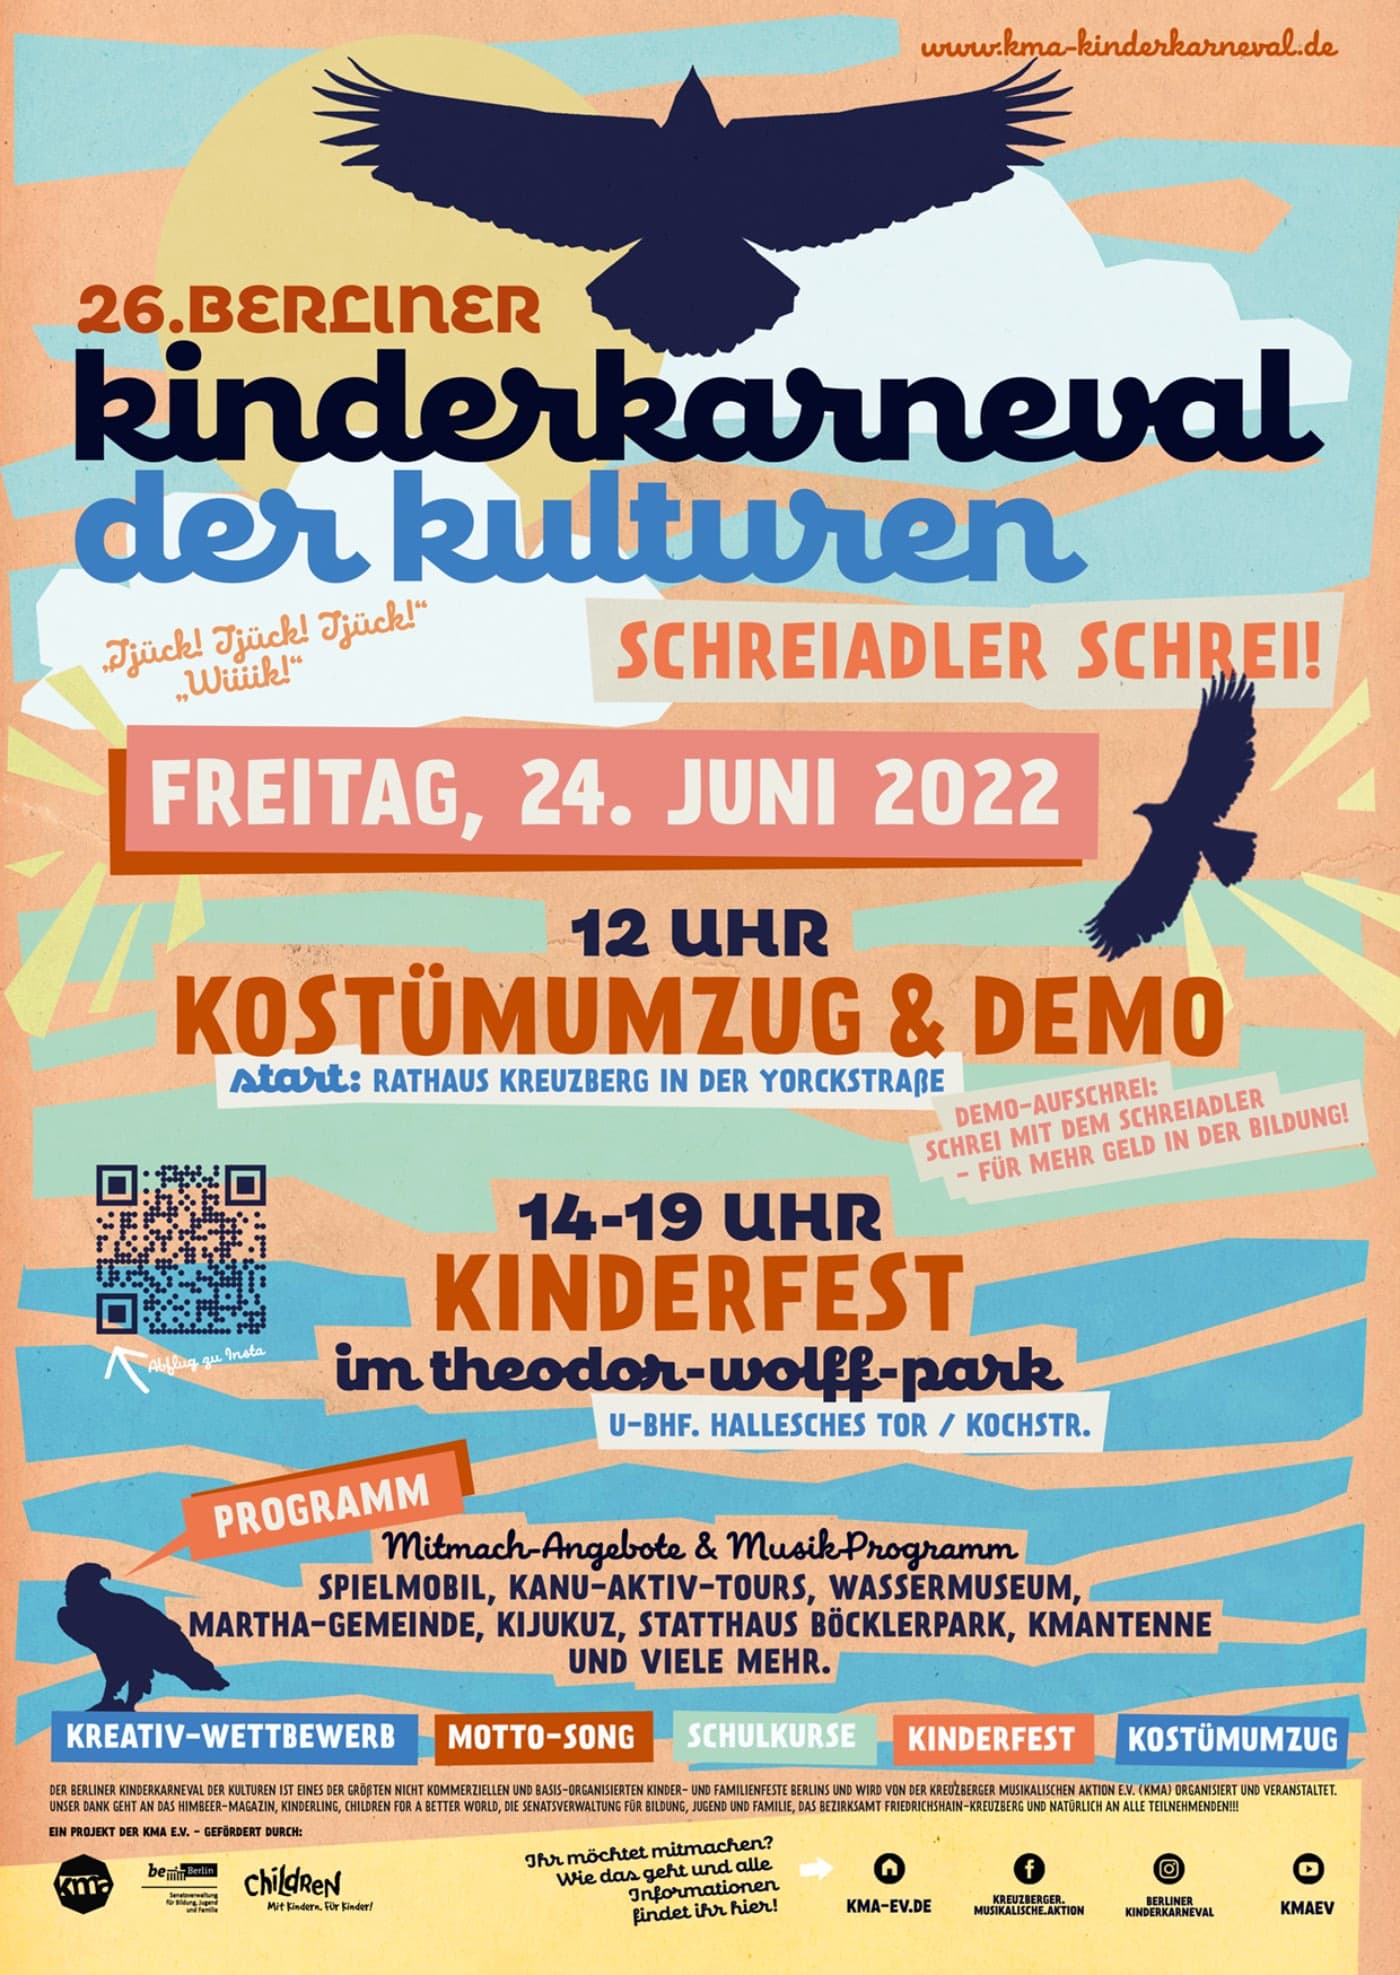 Kinderkarneval 2022 in Berlin: Kostümumzug und Kinderfest // HIMBEER